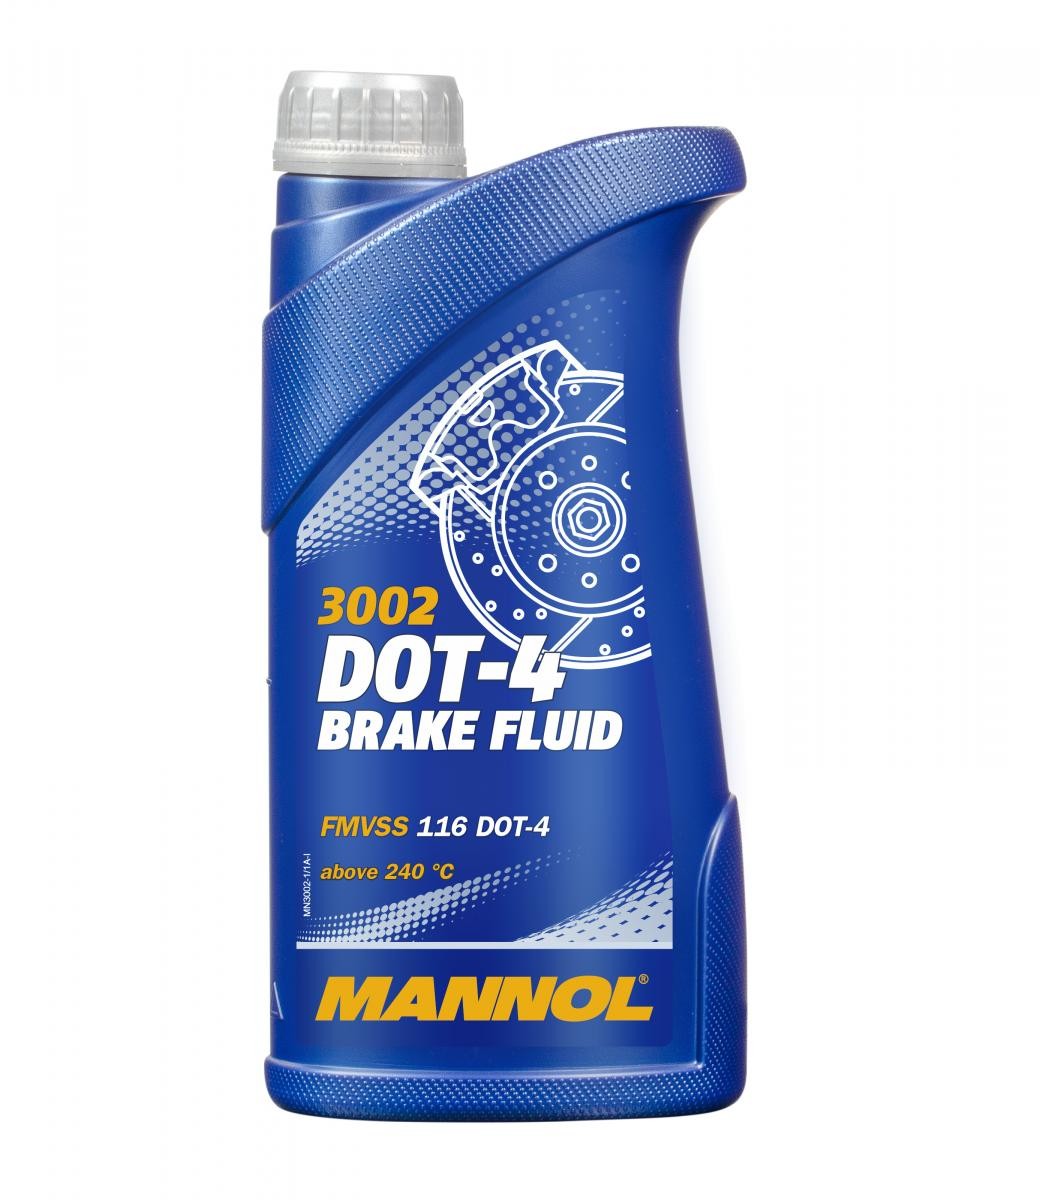 NIPPONIA DION Bremsflüssigkeit 1l MANNOL DOT-4 BRAKE FLUID MN3002-1